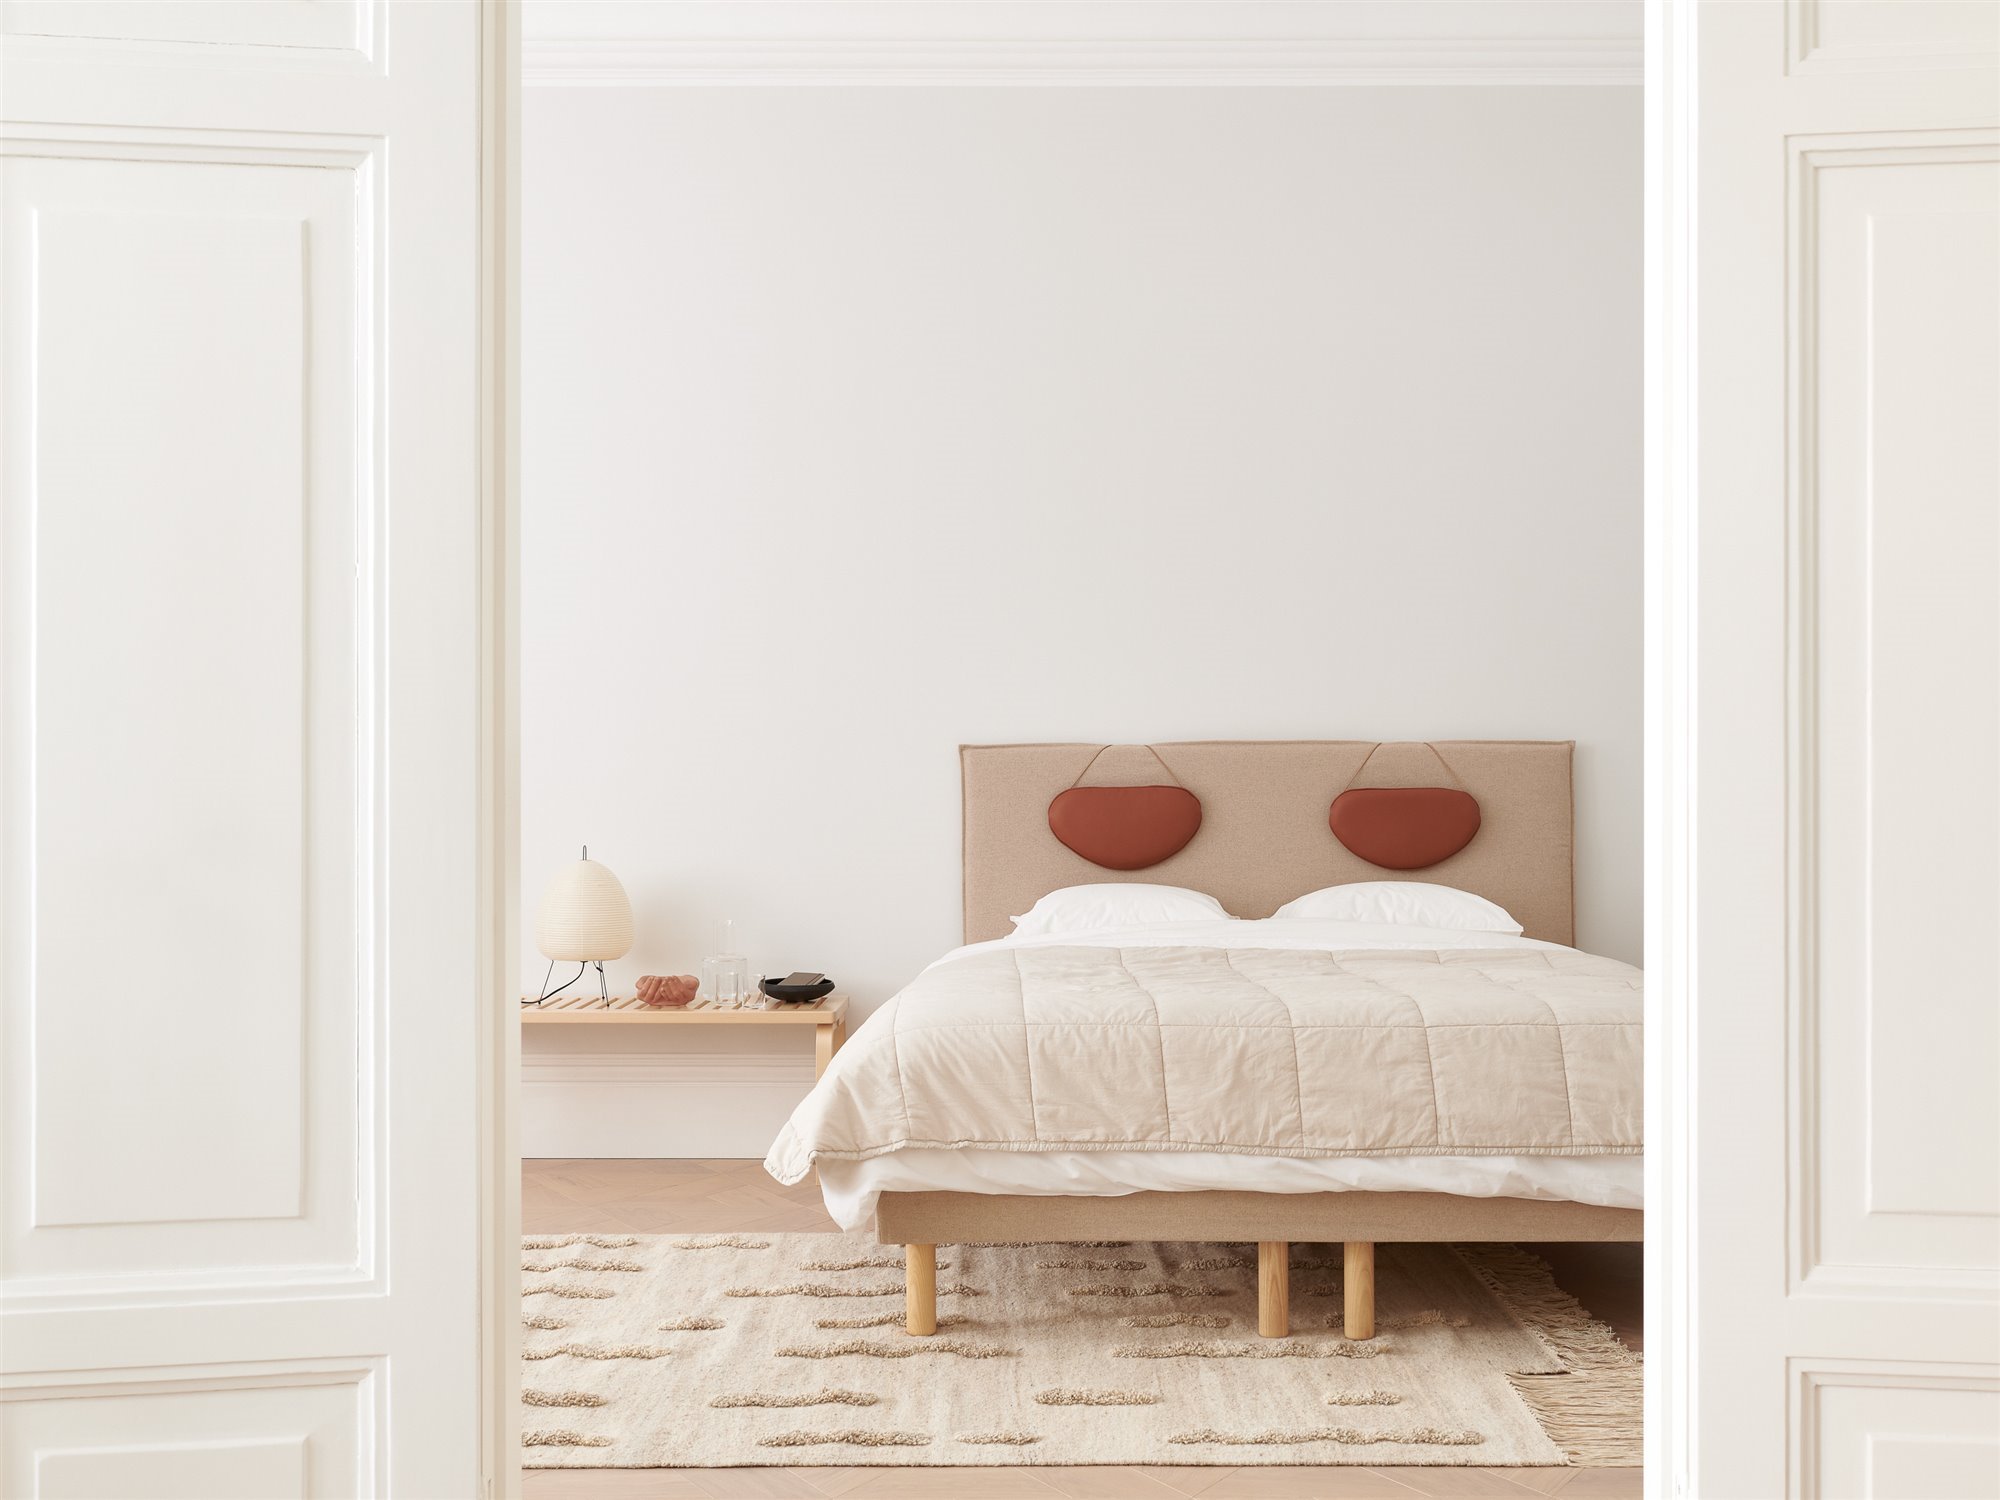 Dormitorio con decoracion nordica con cabecero de tela. Cama protagonista